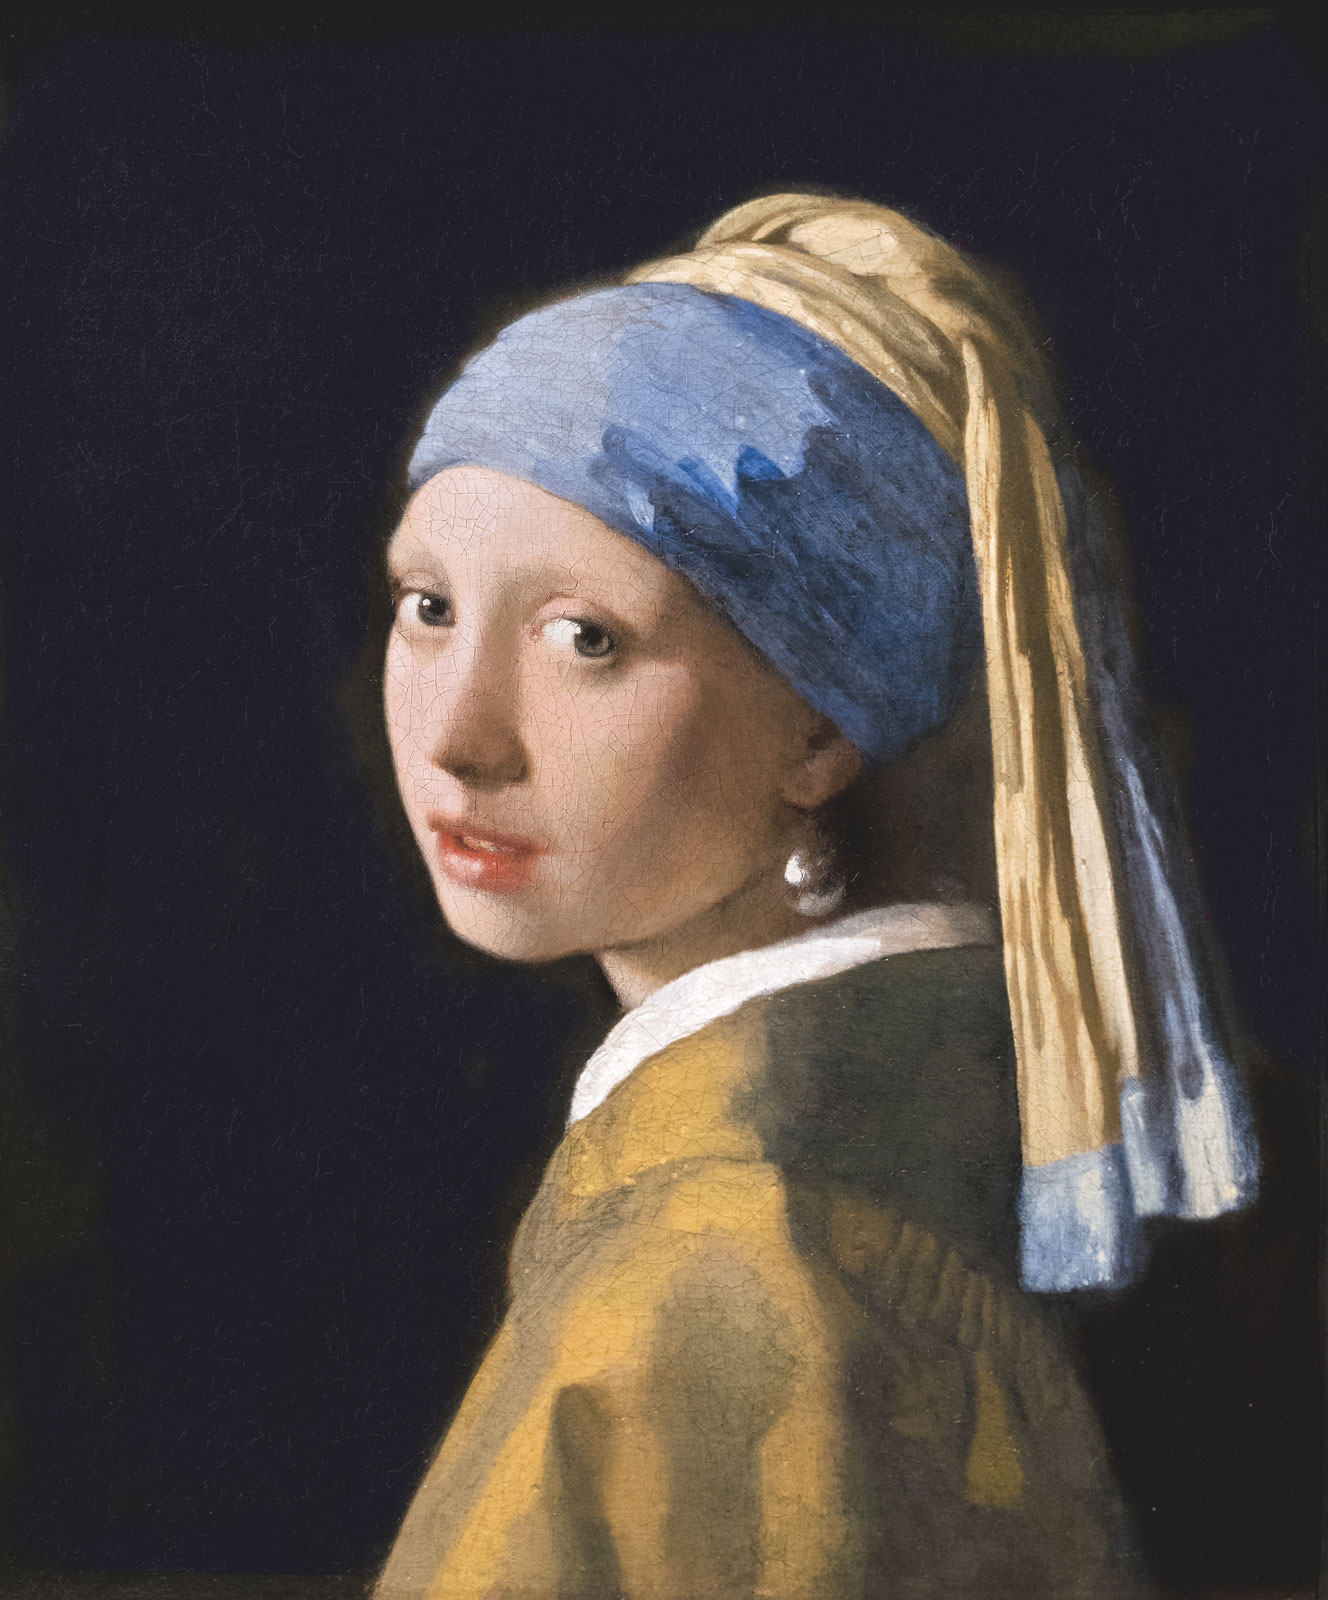 Vermeer